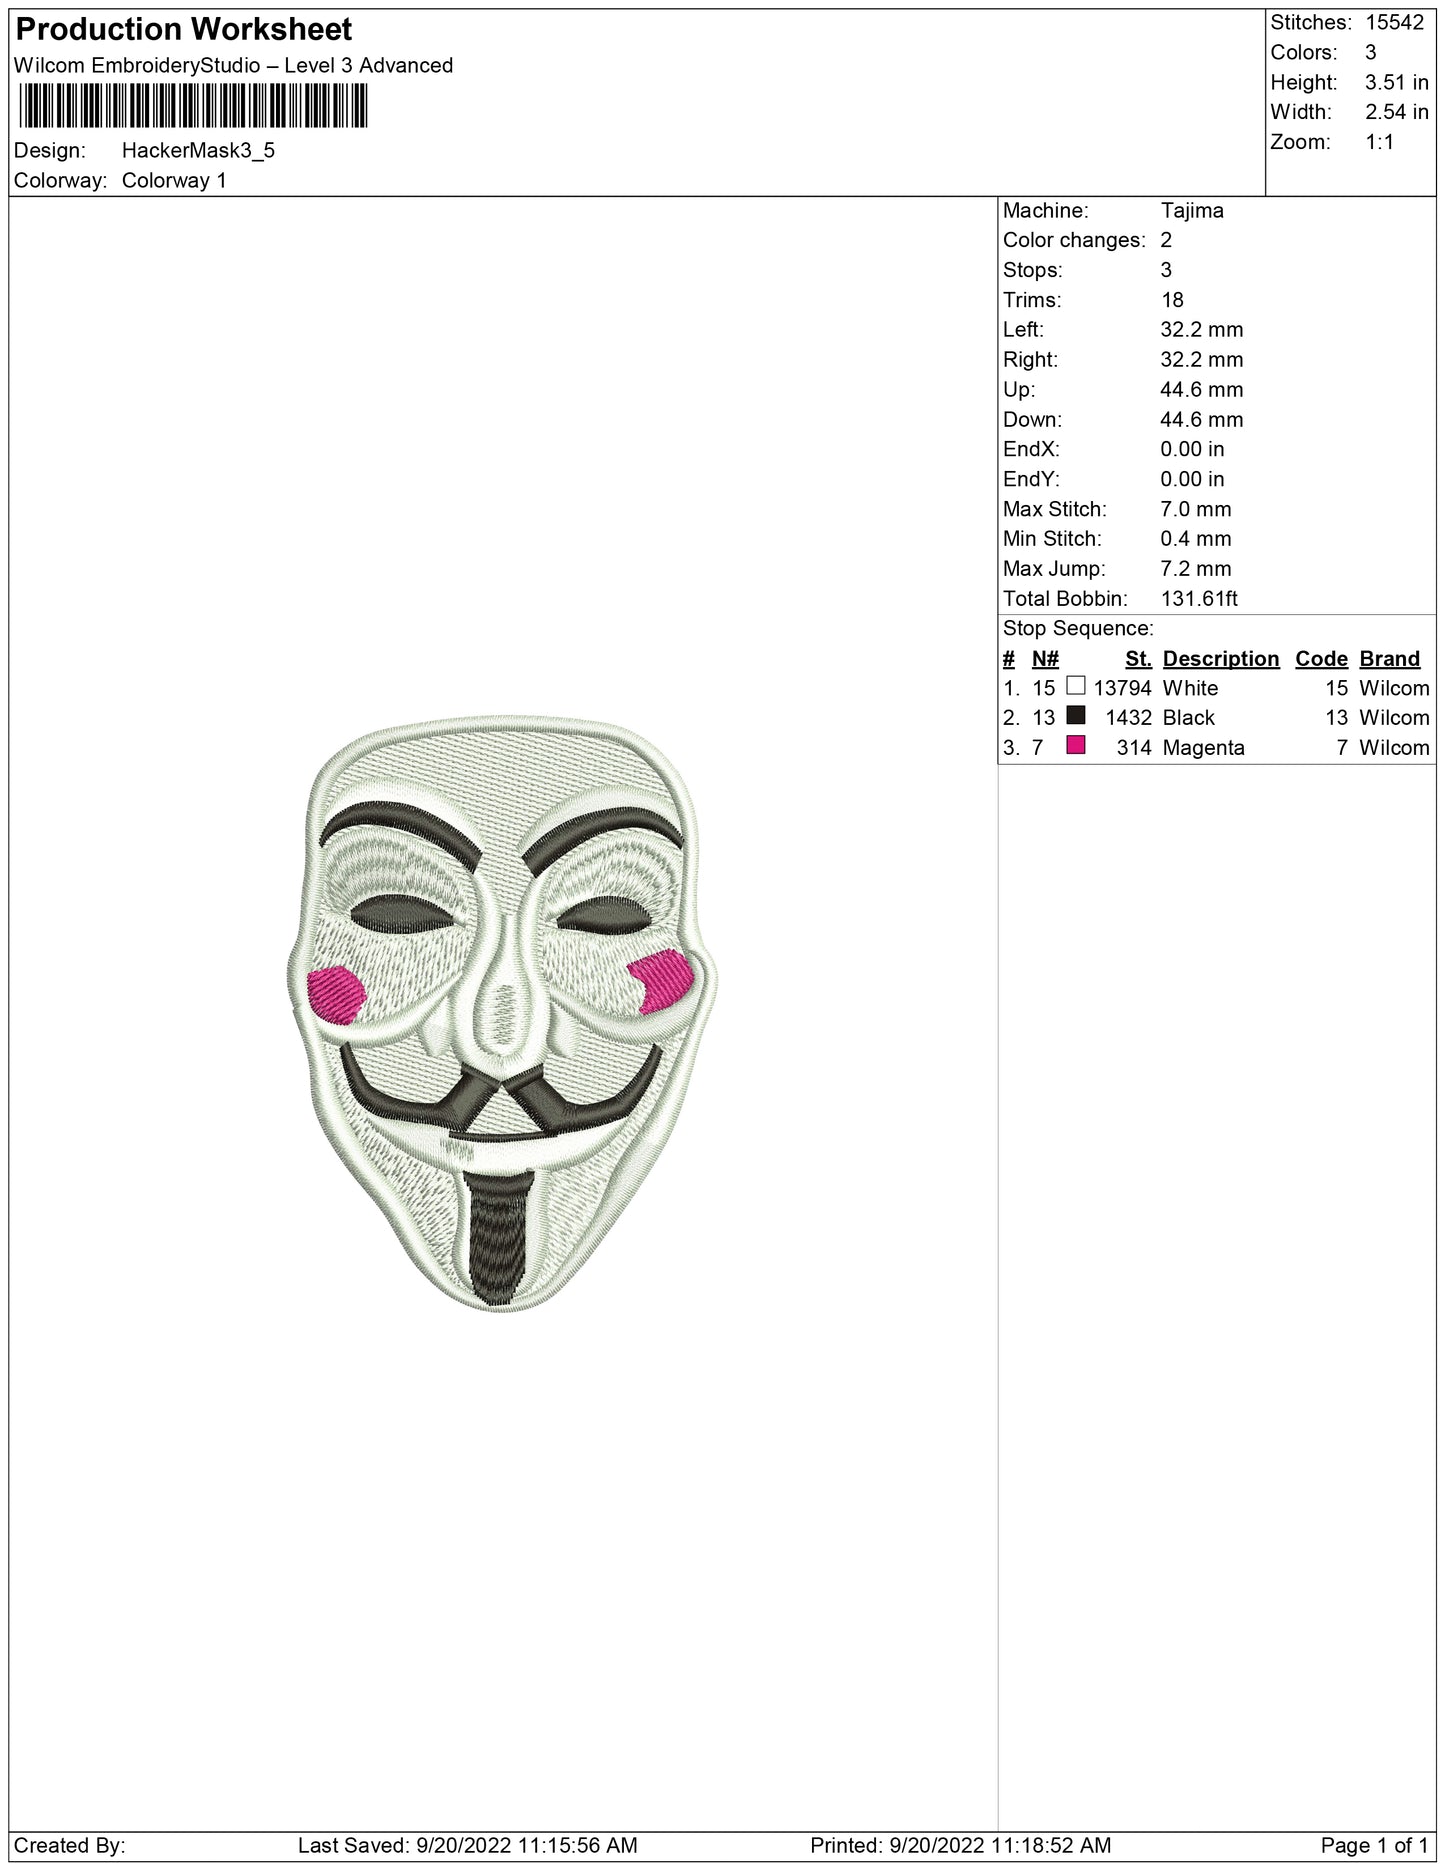 Hacker-Maske